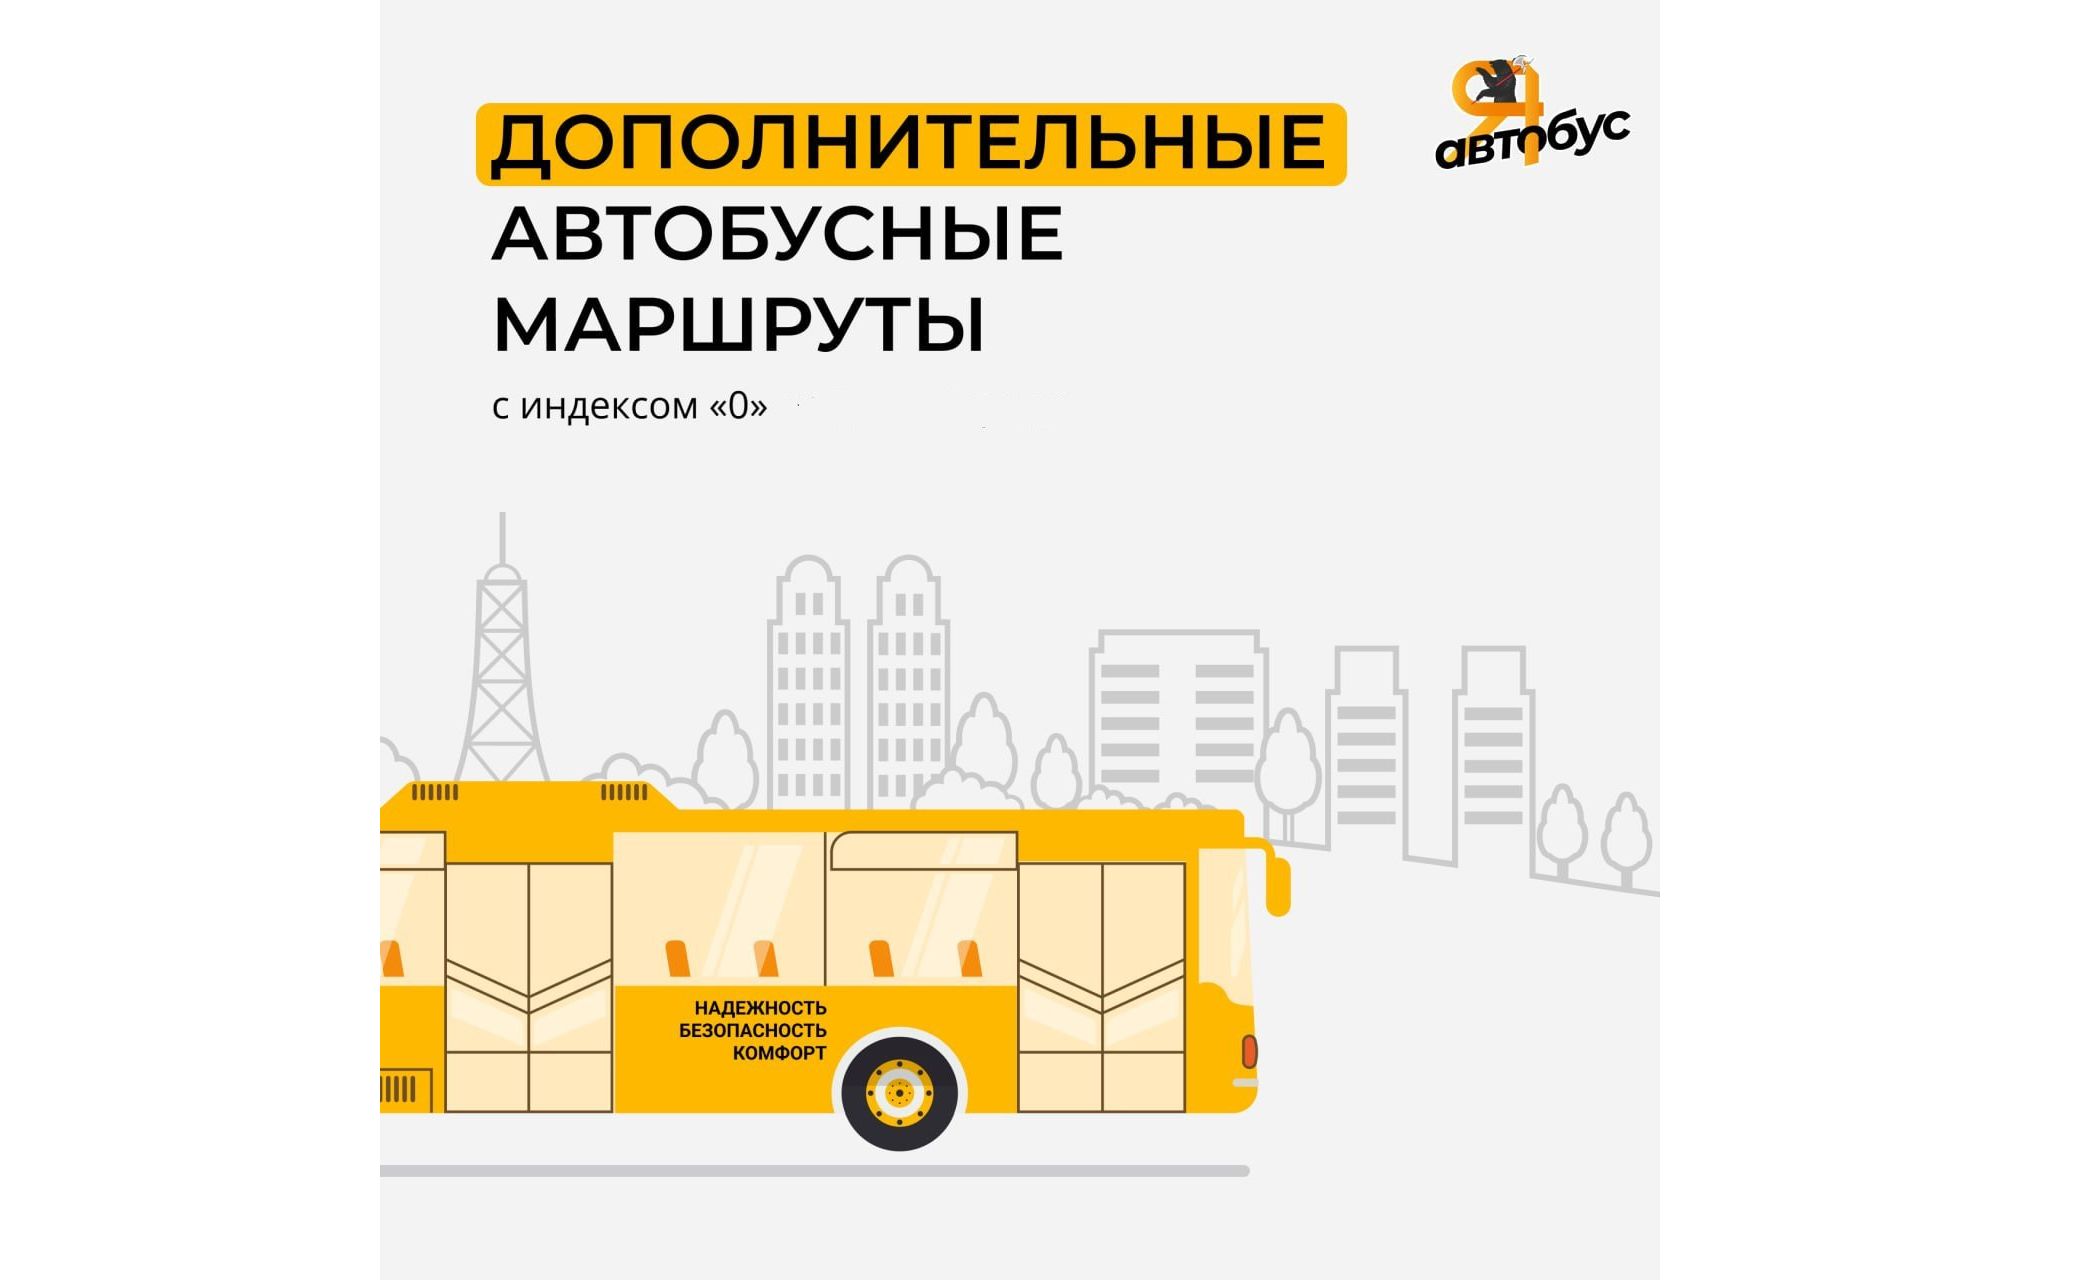 В Ярославле в новогоднюю ночь пустят дополнительные автобусы с индексом «0»